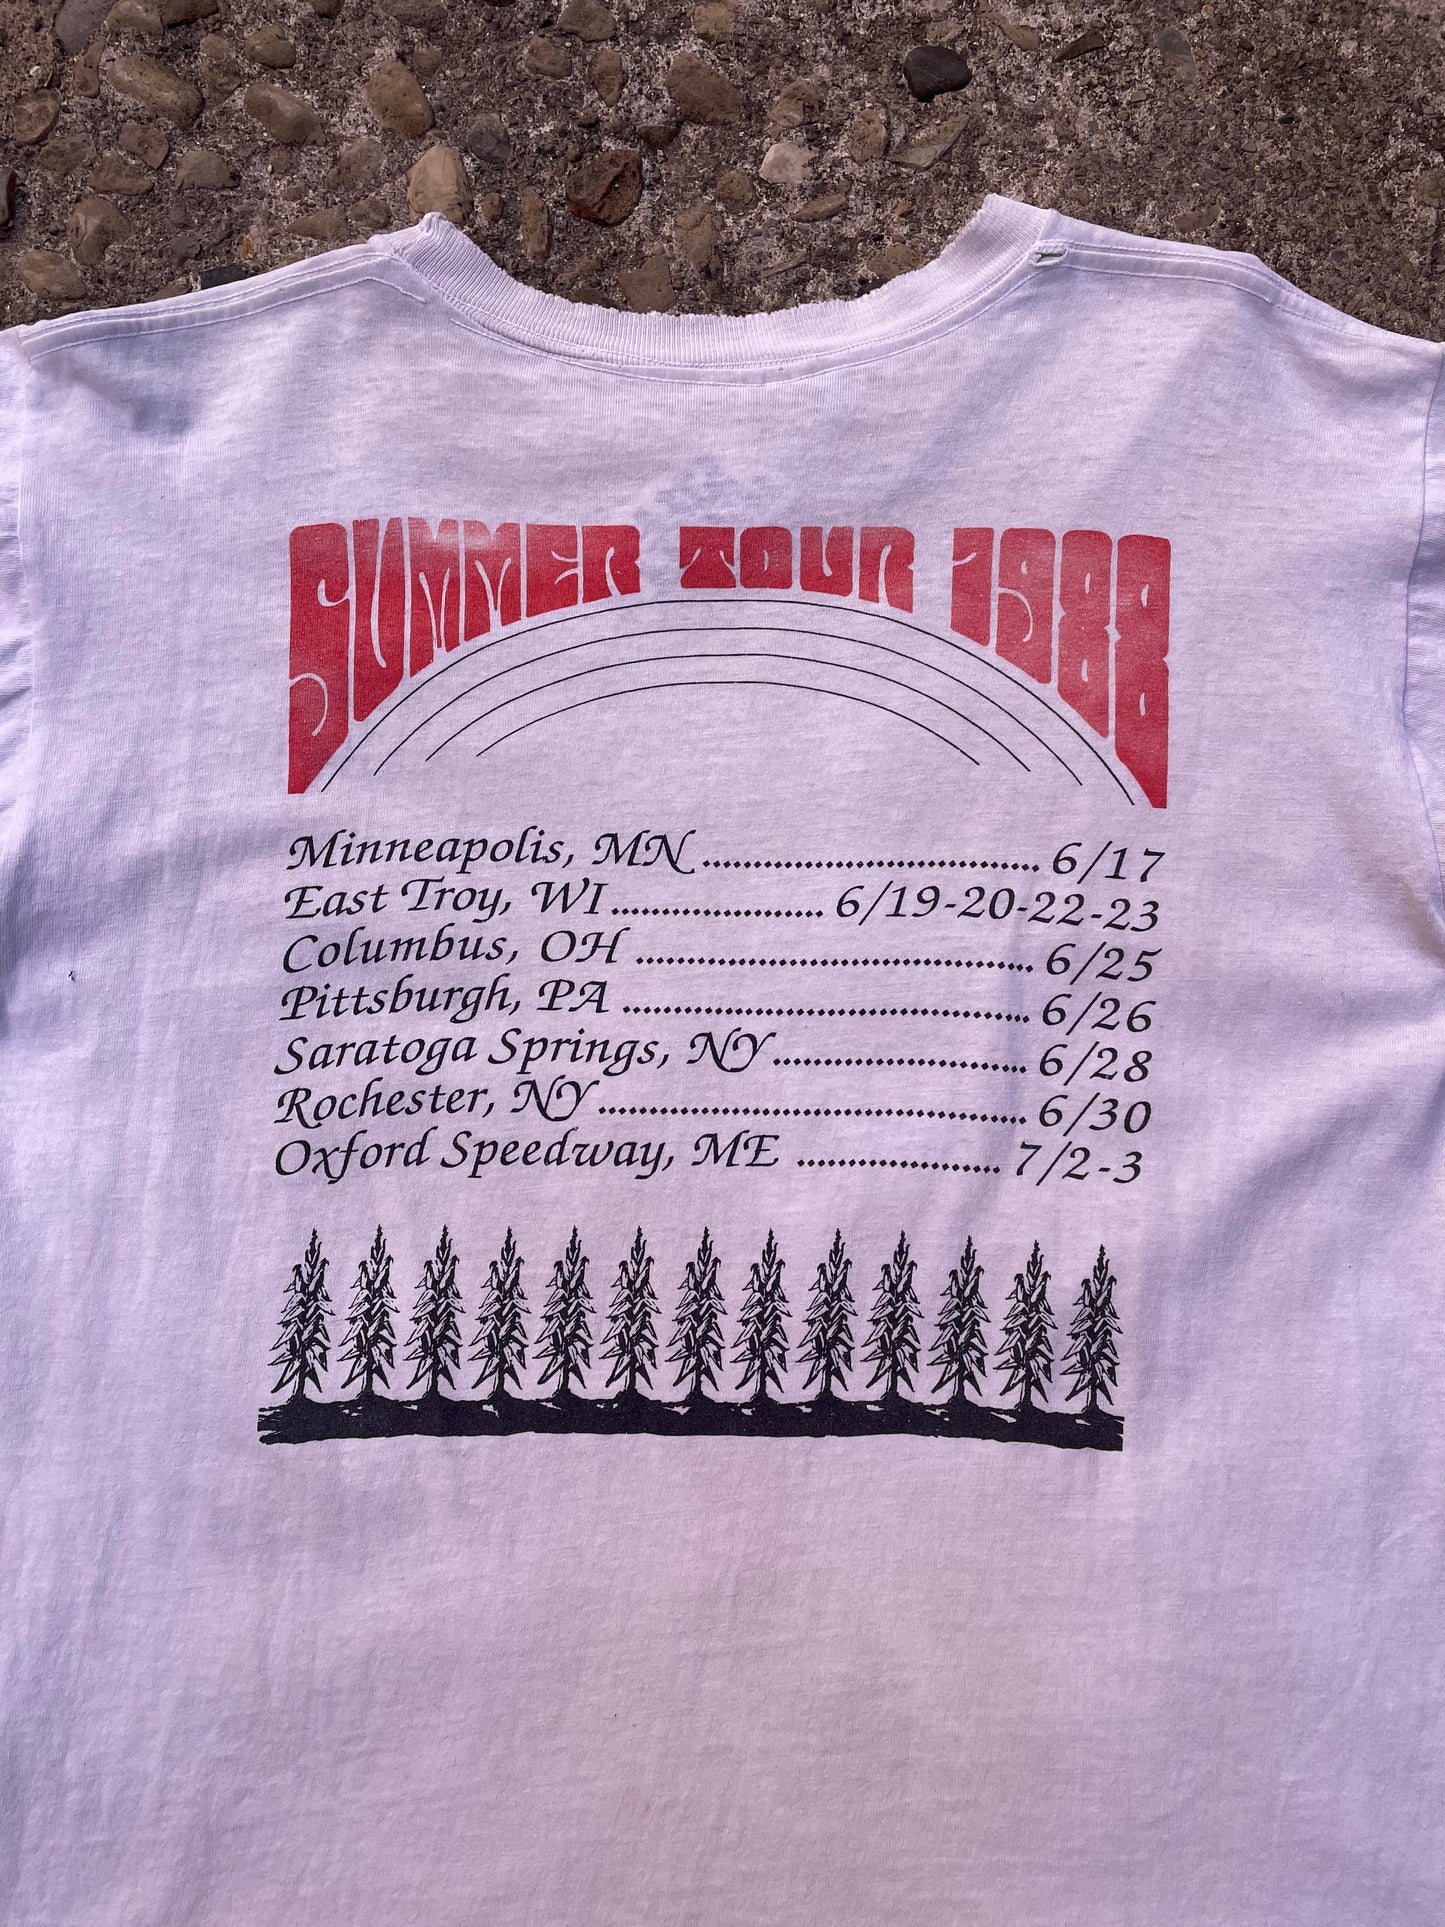 1988 Grateful Dead Summer Tour Band T-Shirt - L